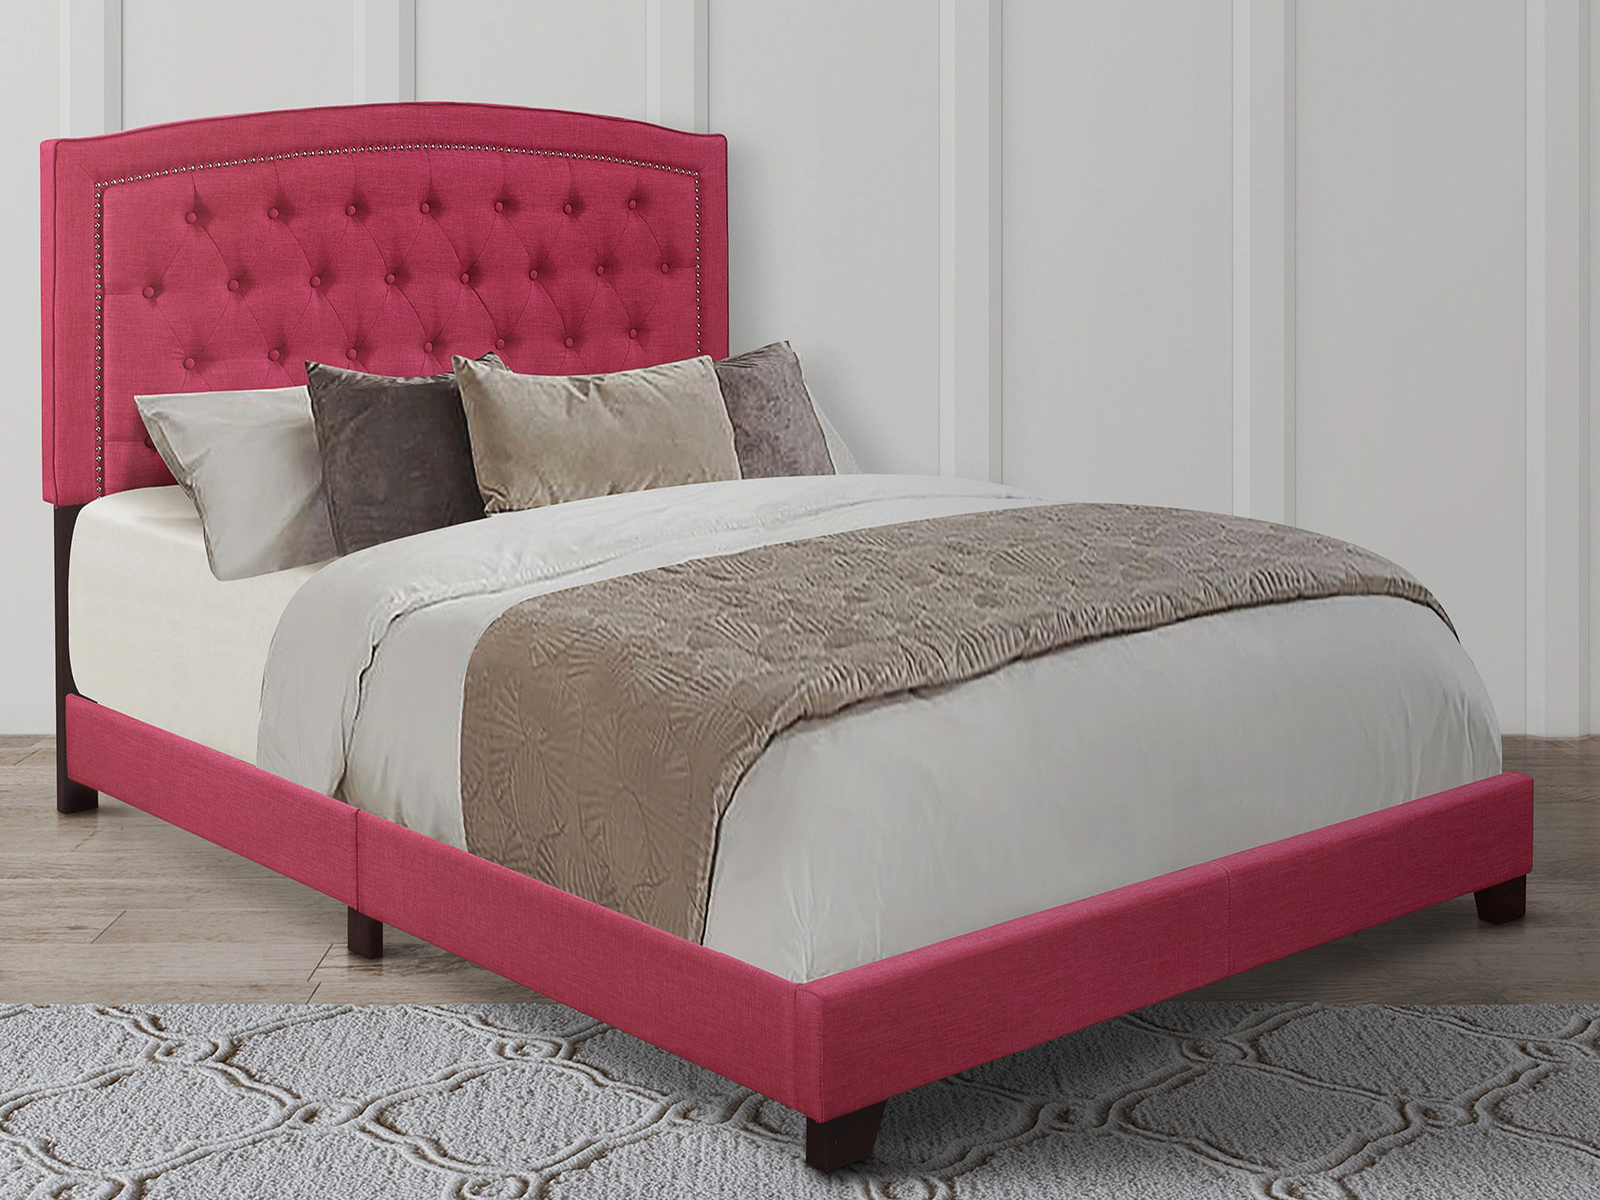 Homelegance Upholstered Bed Set | Queen | Linden Bed Frame & Headboard | Pink